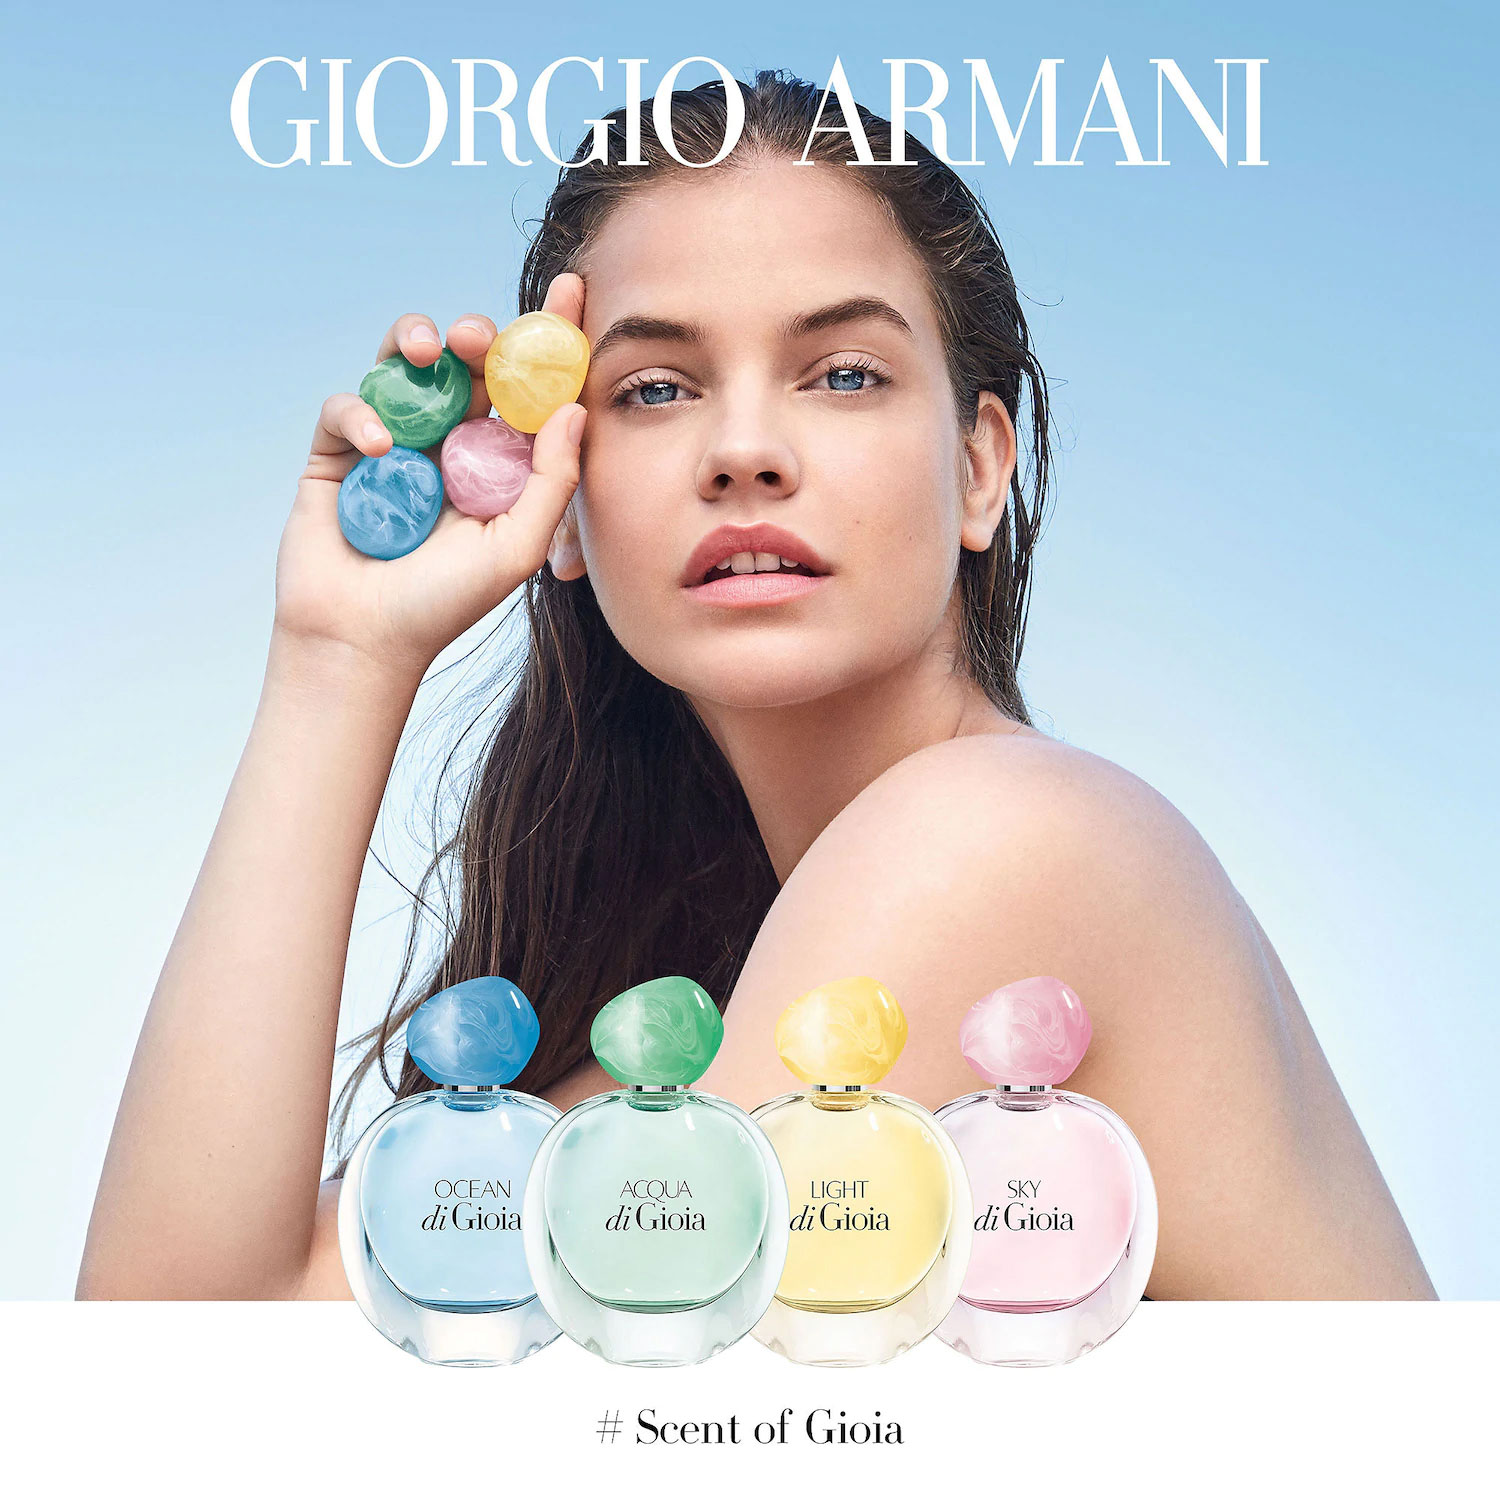 Giorgio Armani Ocean di Gioia aquatic floral perfume guide to scents